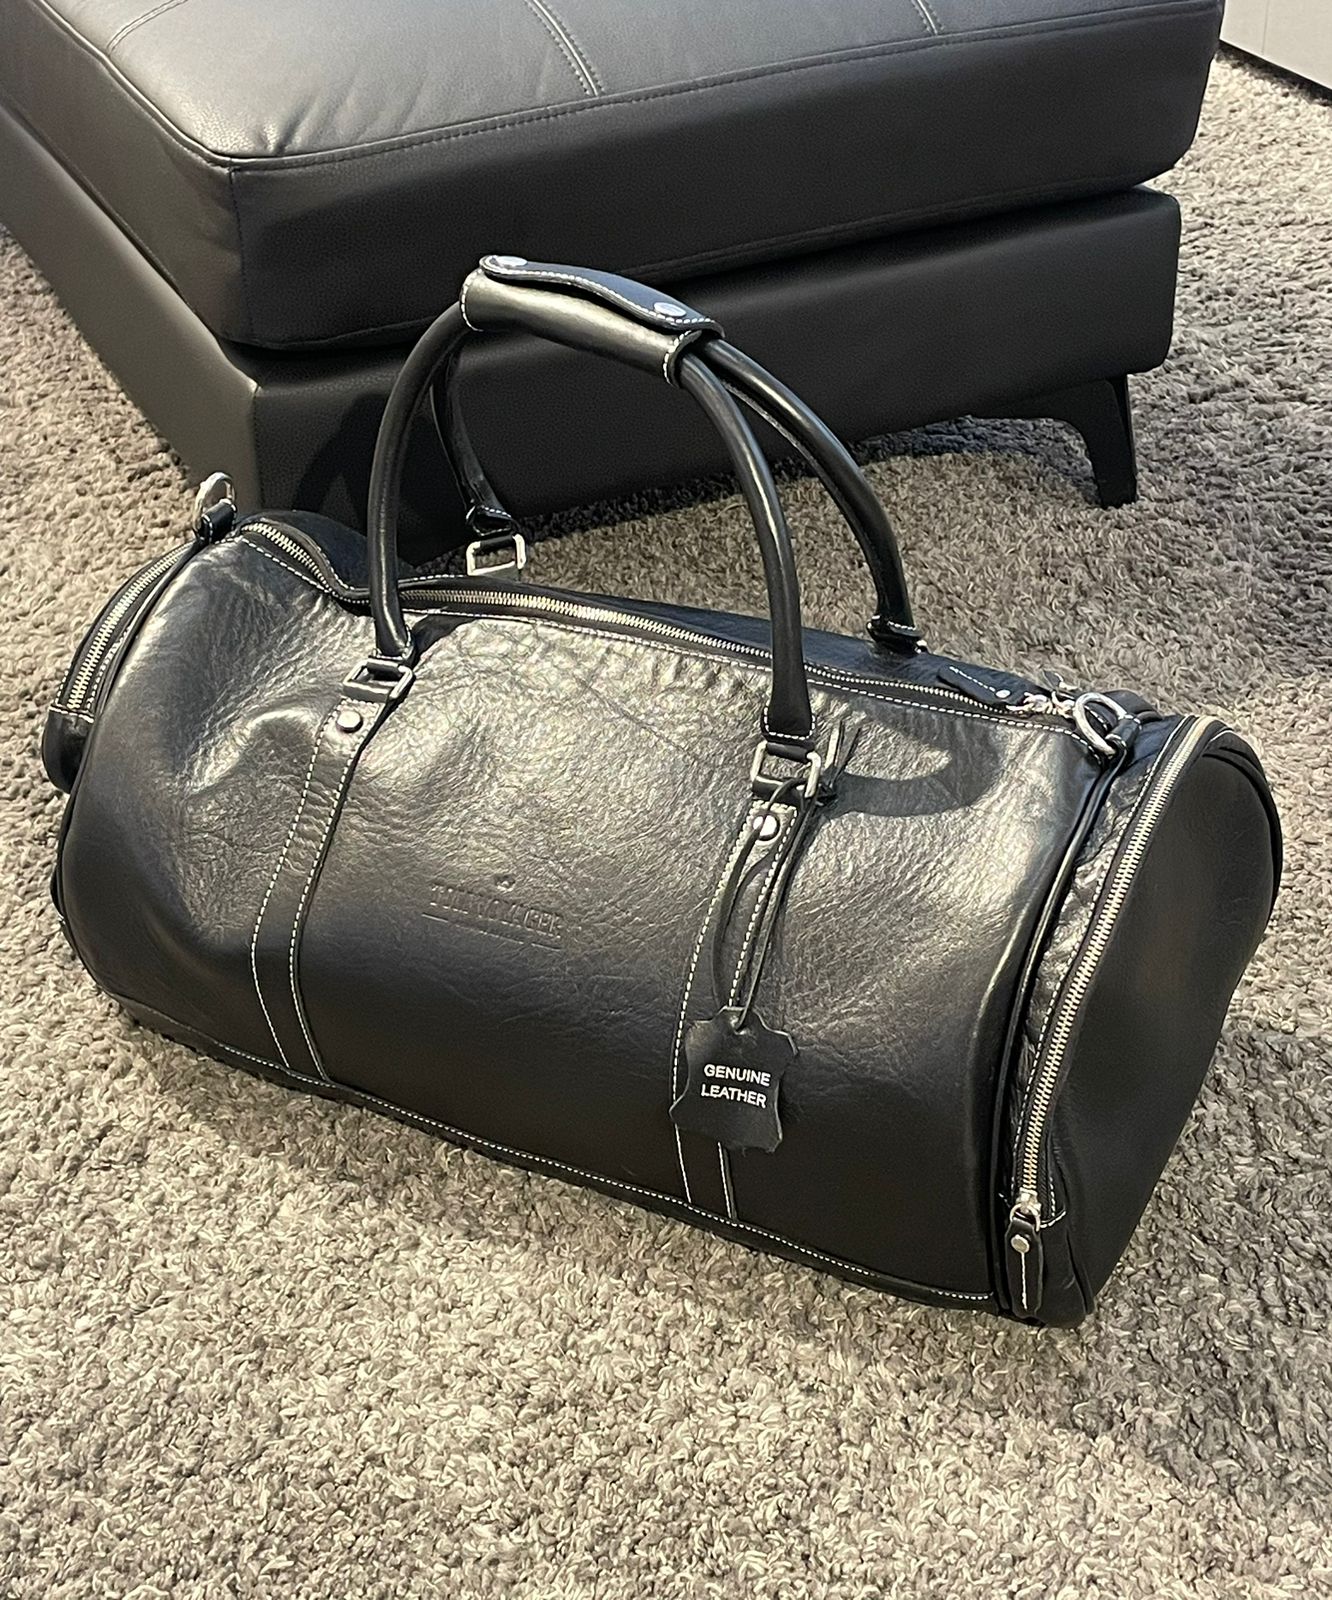 Duncan Leather Travel Bag - Black